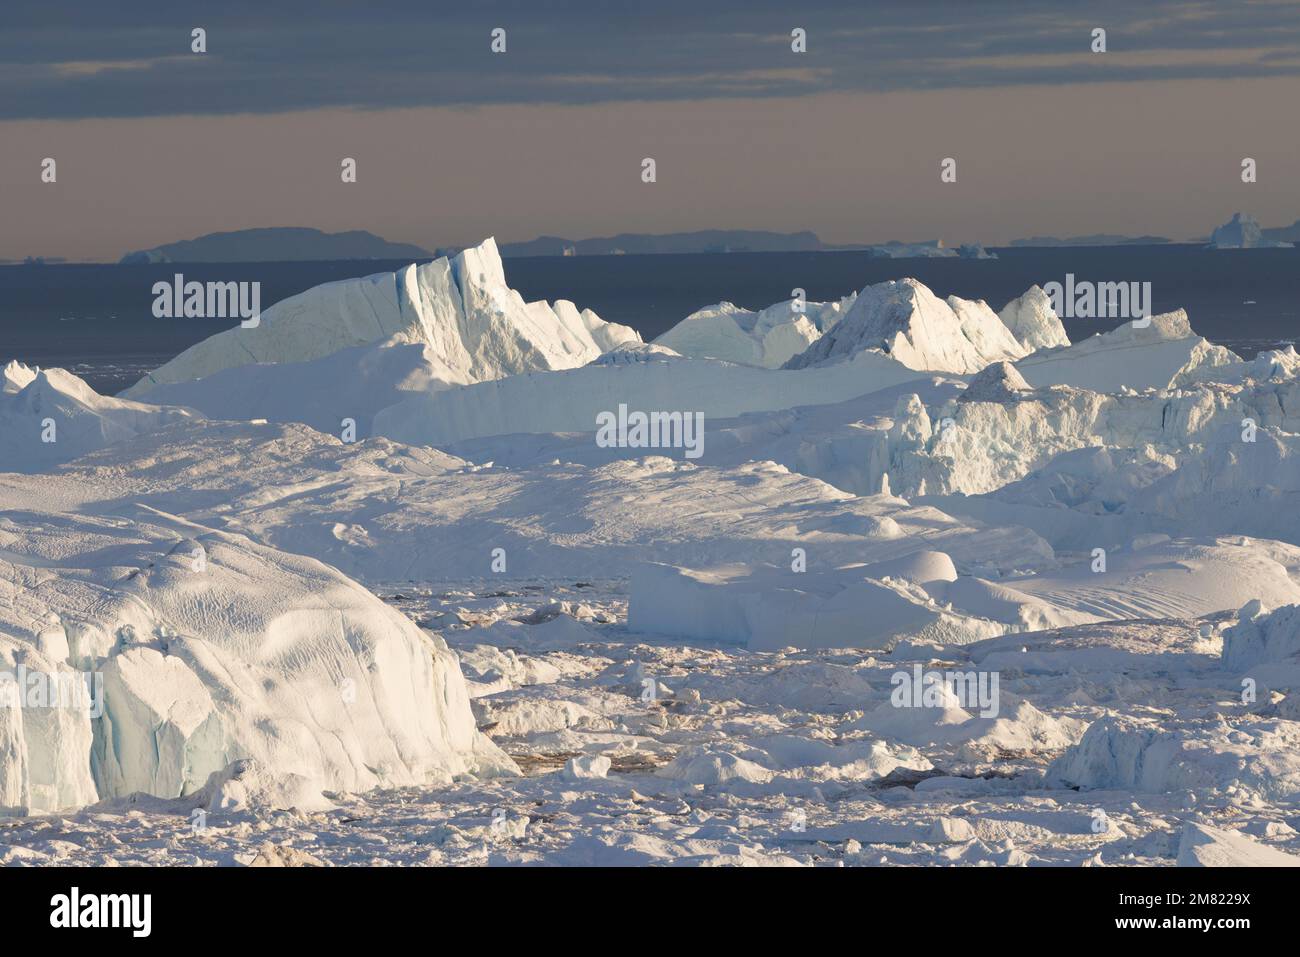 de grandes icebergs flottant sur la mer Banque D'Images